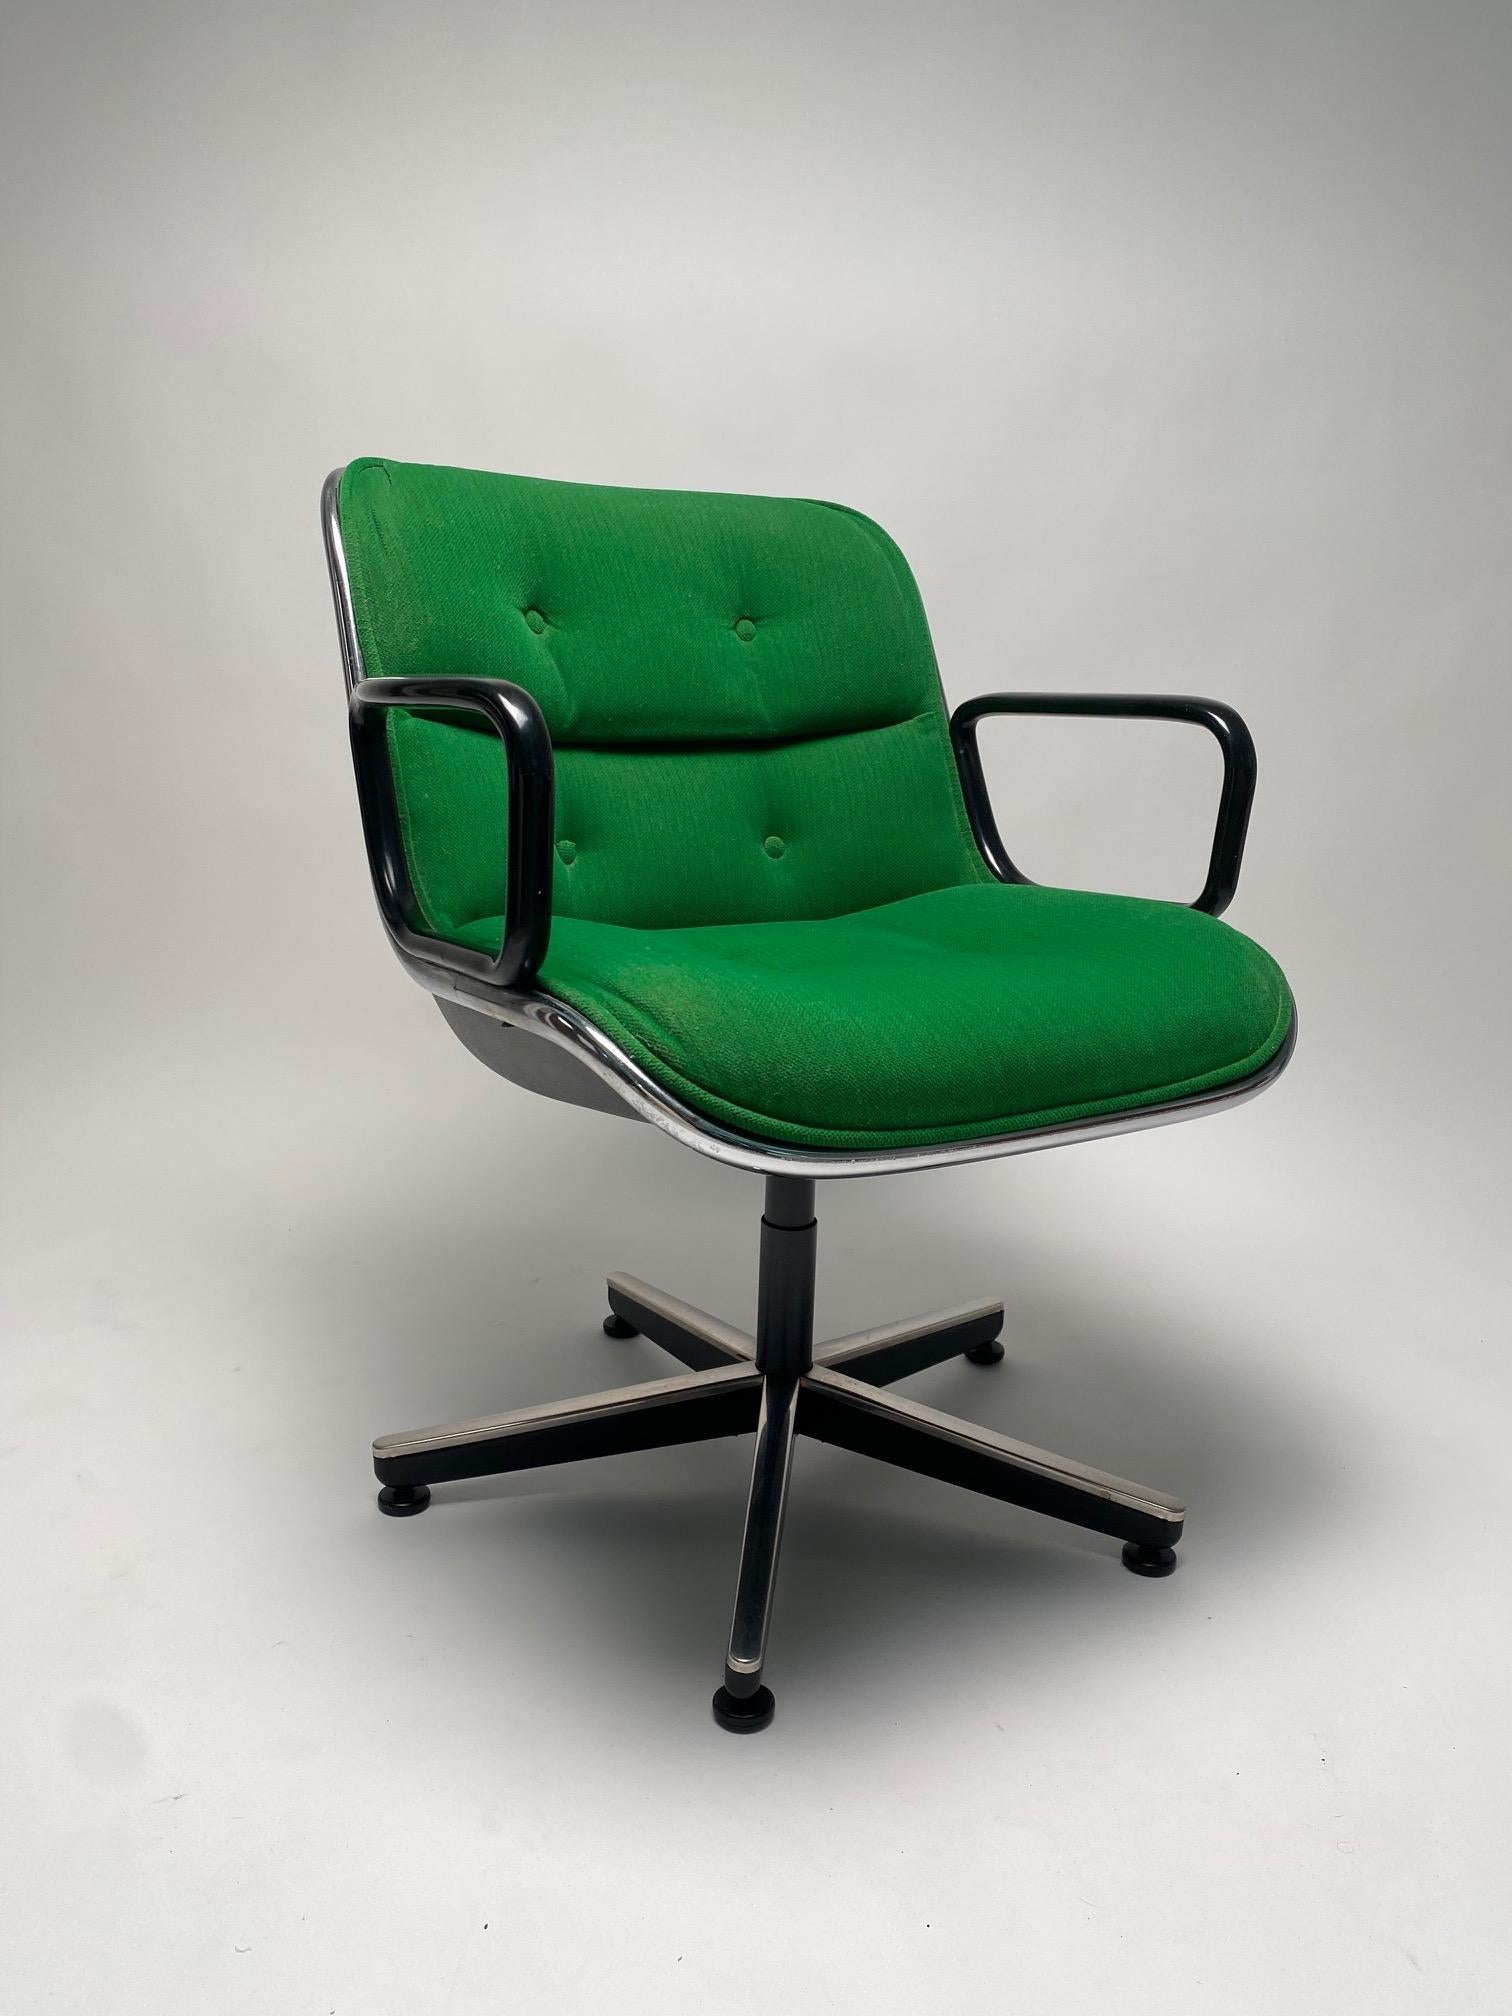 Charles Pollock, fauteuils de direction pour Knoll, 1963

Il s'agit de l'un des fauteuils de bureau les plus emblématiques et les plus représentatifs, créé par l'artiste et designer américain Charles Pollock. Nous proposons ici une paire de ces